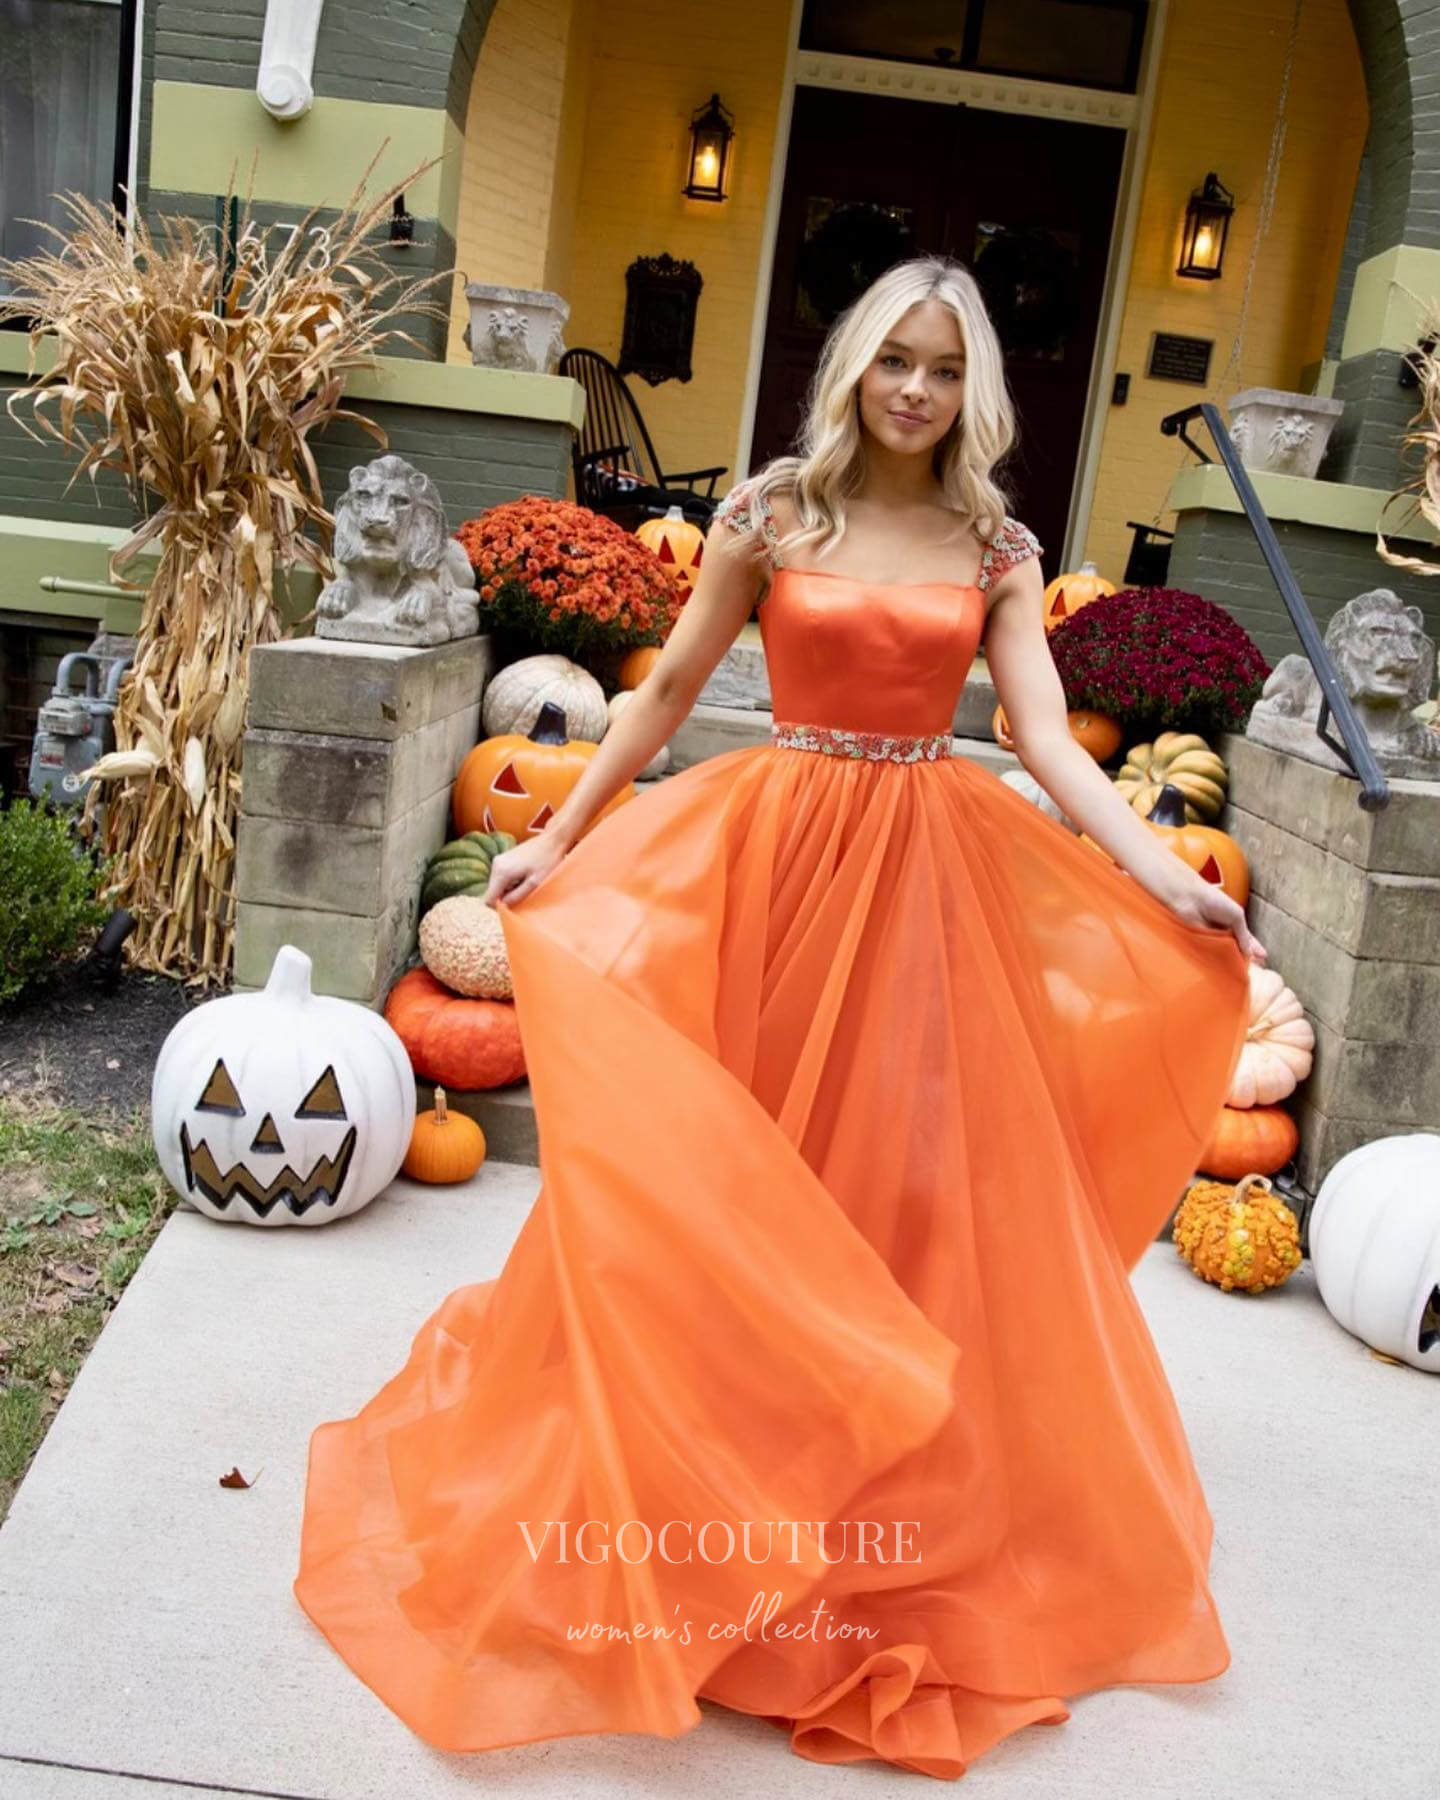 vigocouture-Orange Cap Sleeve Prom Dresses Organza A-Line Evening Dress 21792-Prom Dresses-vigocouture-Orange-US2-